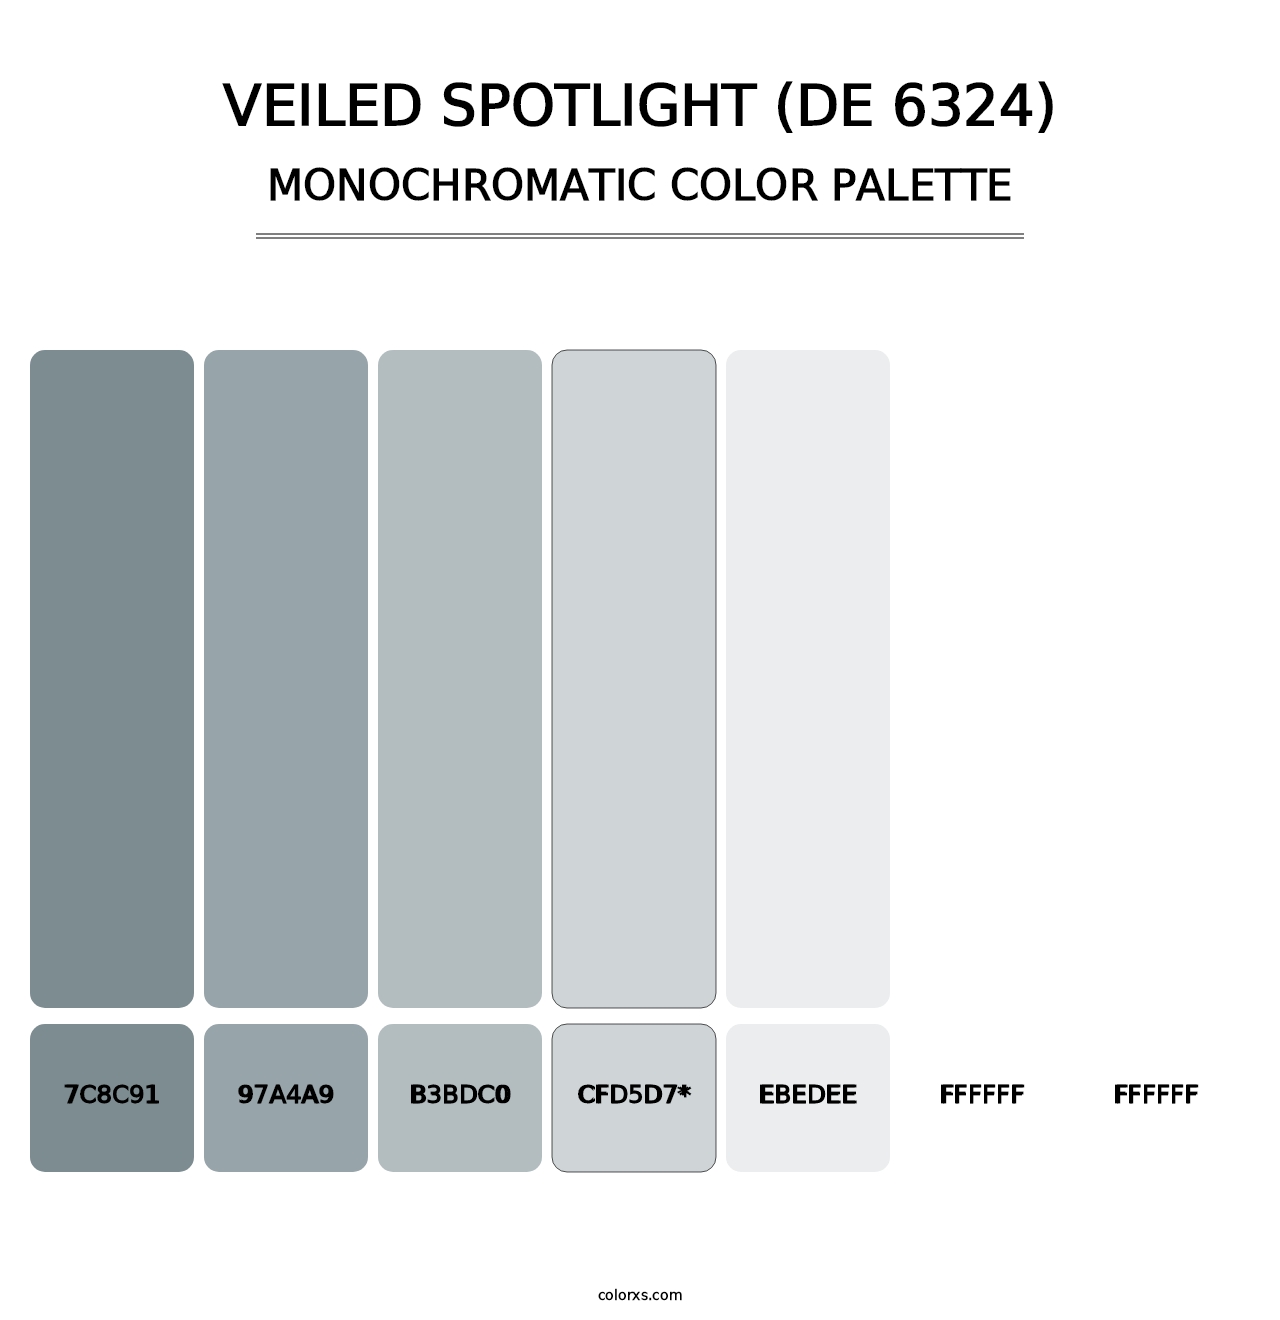 Veiled Spotlight (DE 6324) - Monochromatic Color Palette